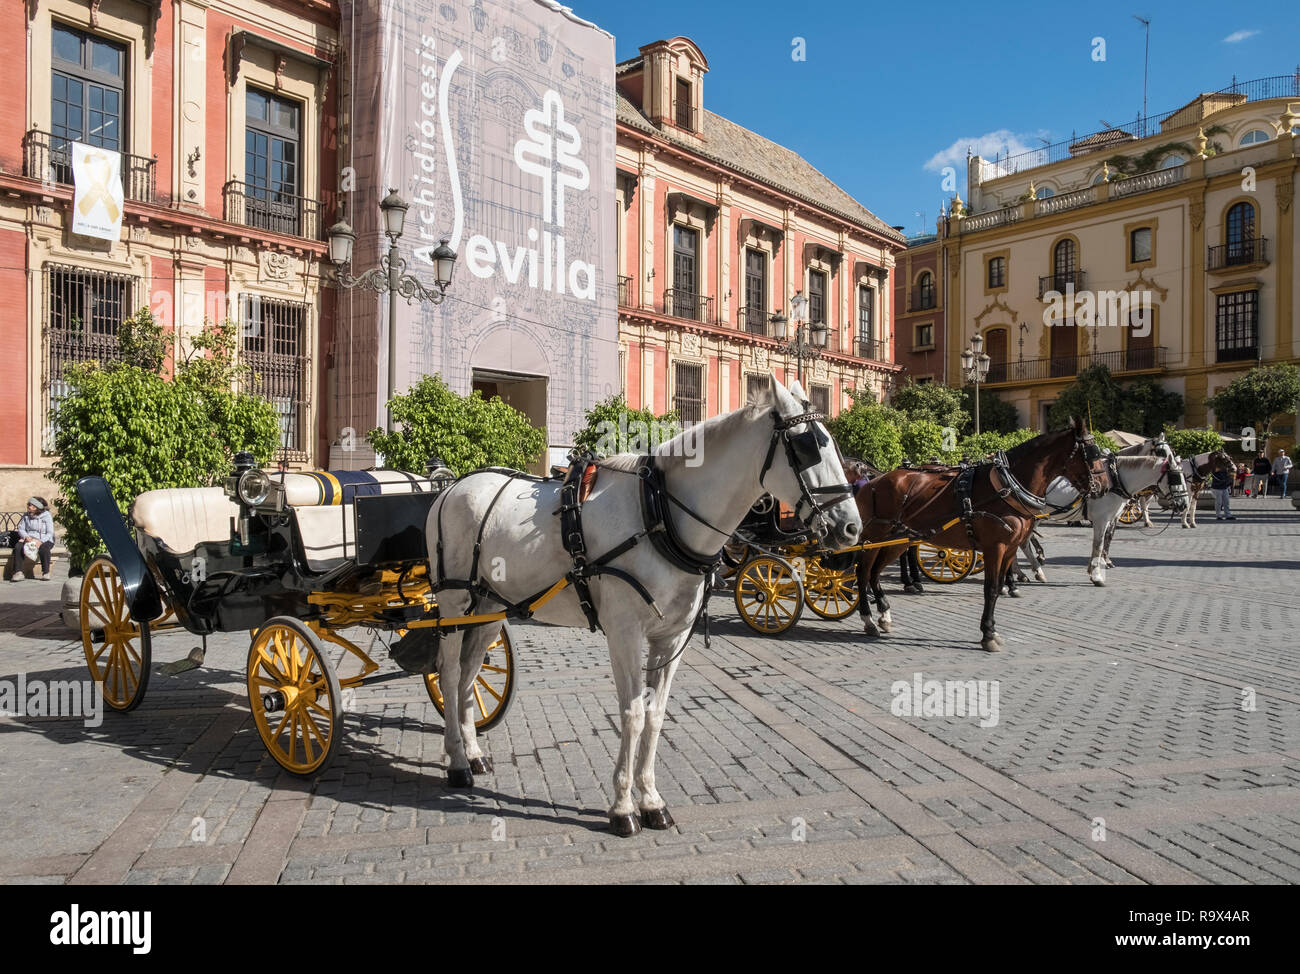 Beliebte touristische Ort mit Pferdewagen in Plaza Virgen de los Reyes, Sevilla, Spanien Stockfoto